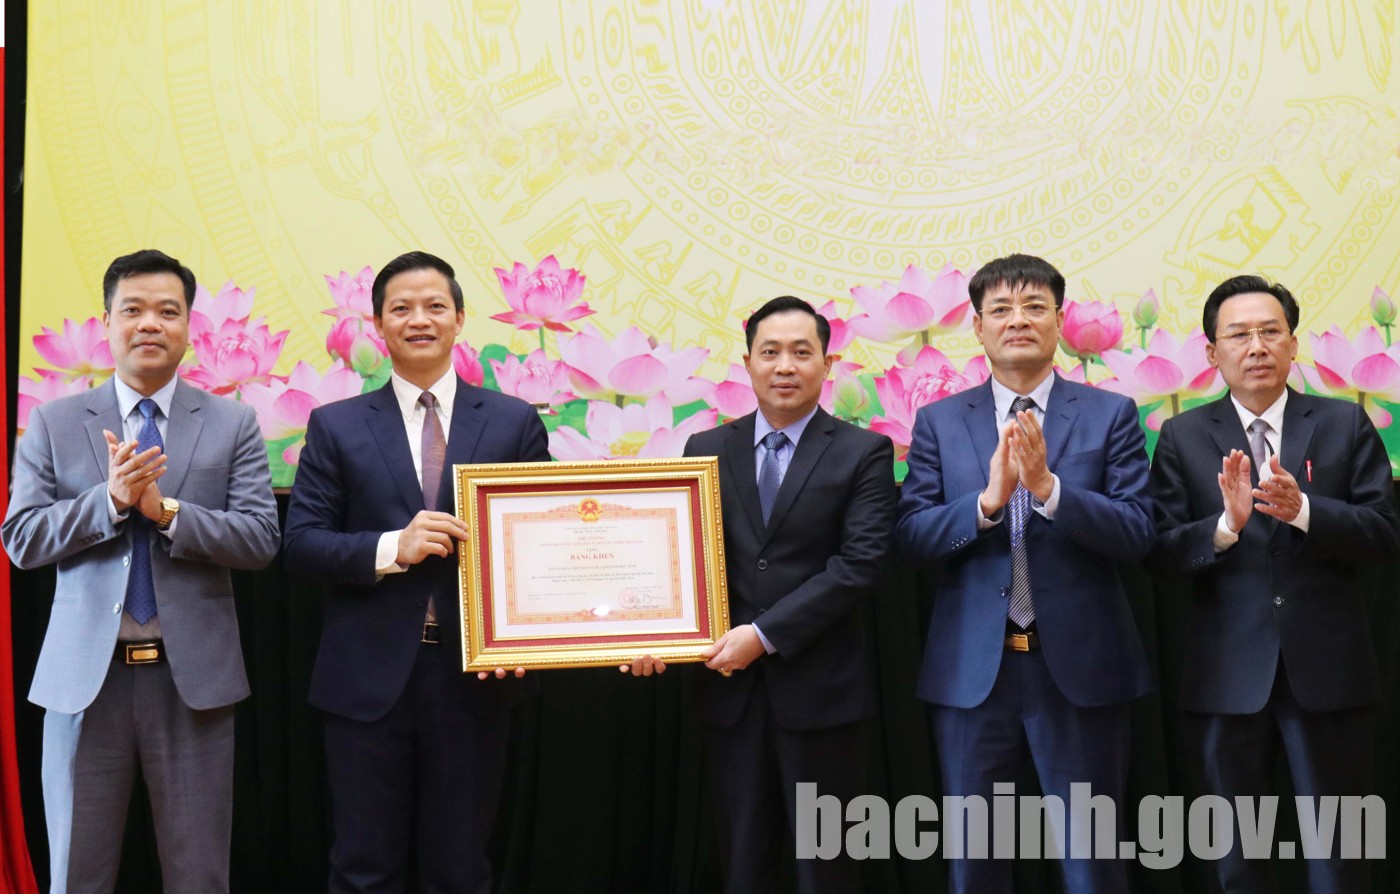 Sở Văn hóa, Thể thao và Du lịch tỉnh Bắc Ninh triển khai nhiệm vụ công tác năm 2023